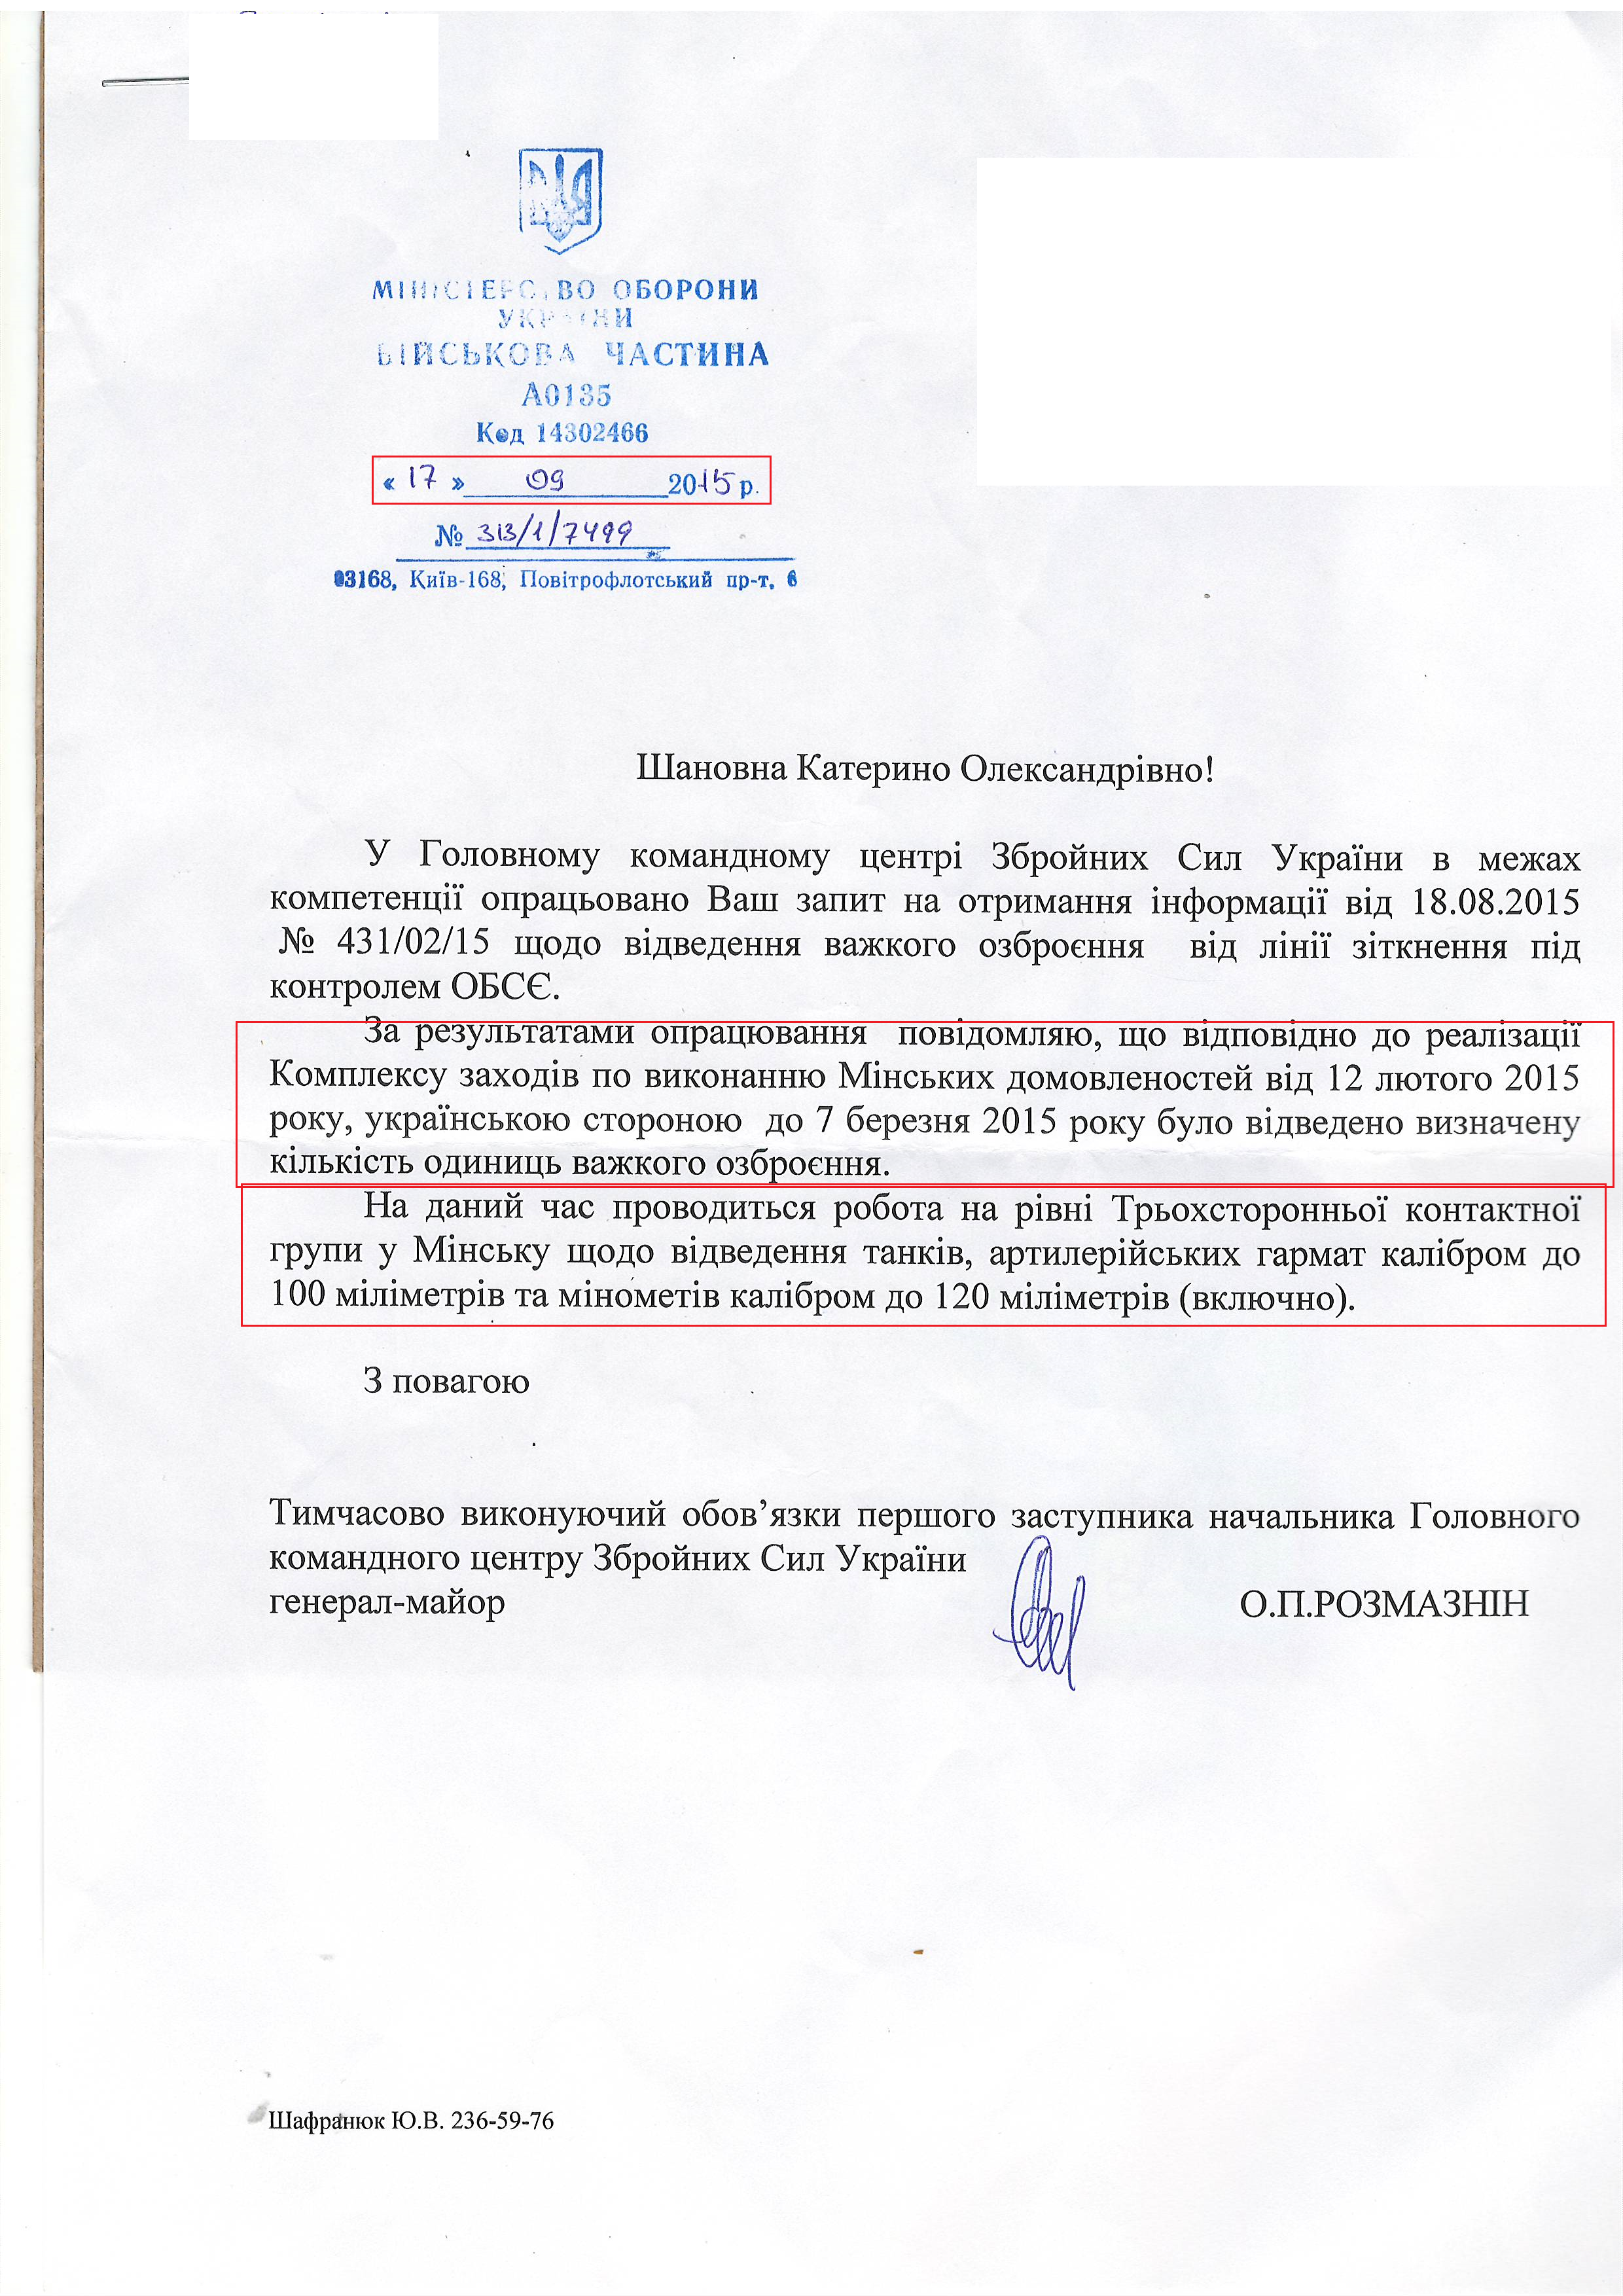 Лист міністерства оборони України від 17 вересня 2015 року